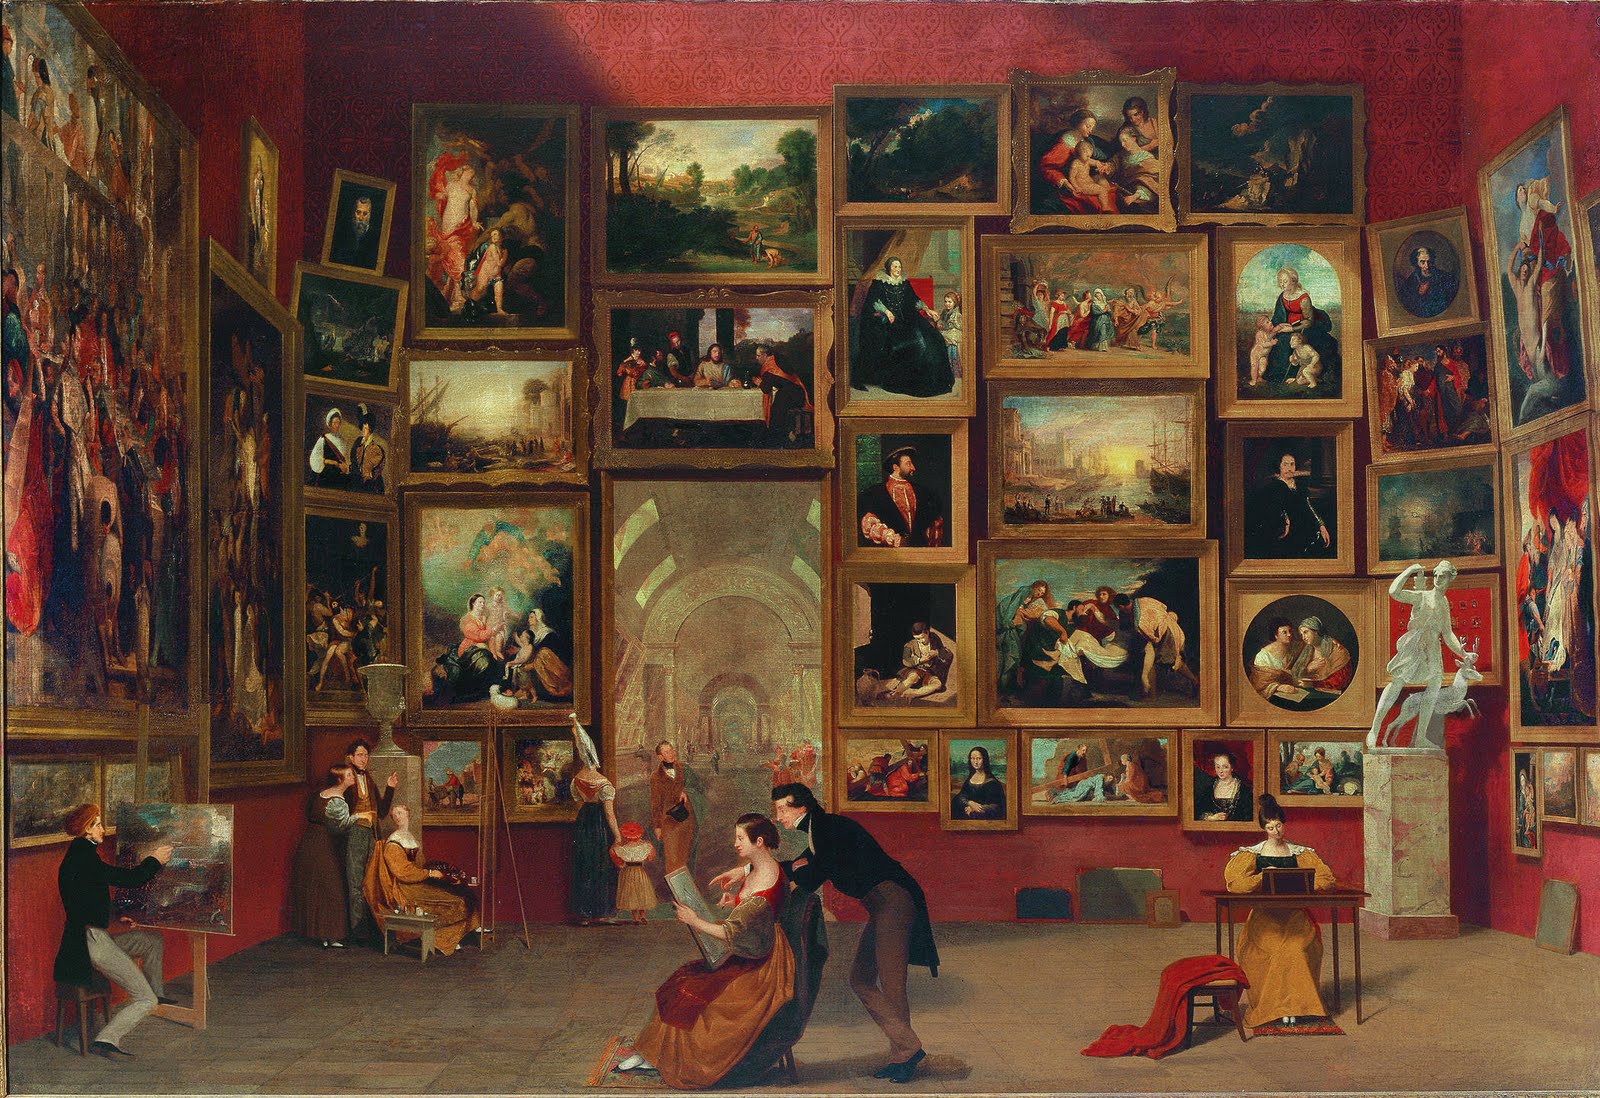 Галерея Лувра by Samuel F. B. Morse - 1831-1833 - 187.3 x 274.3 см 